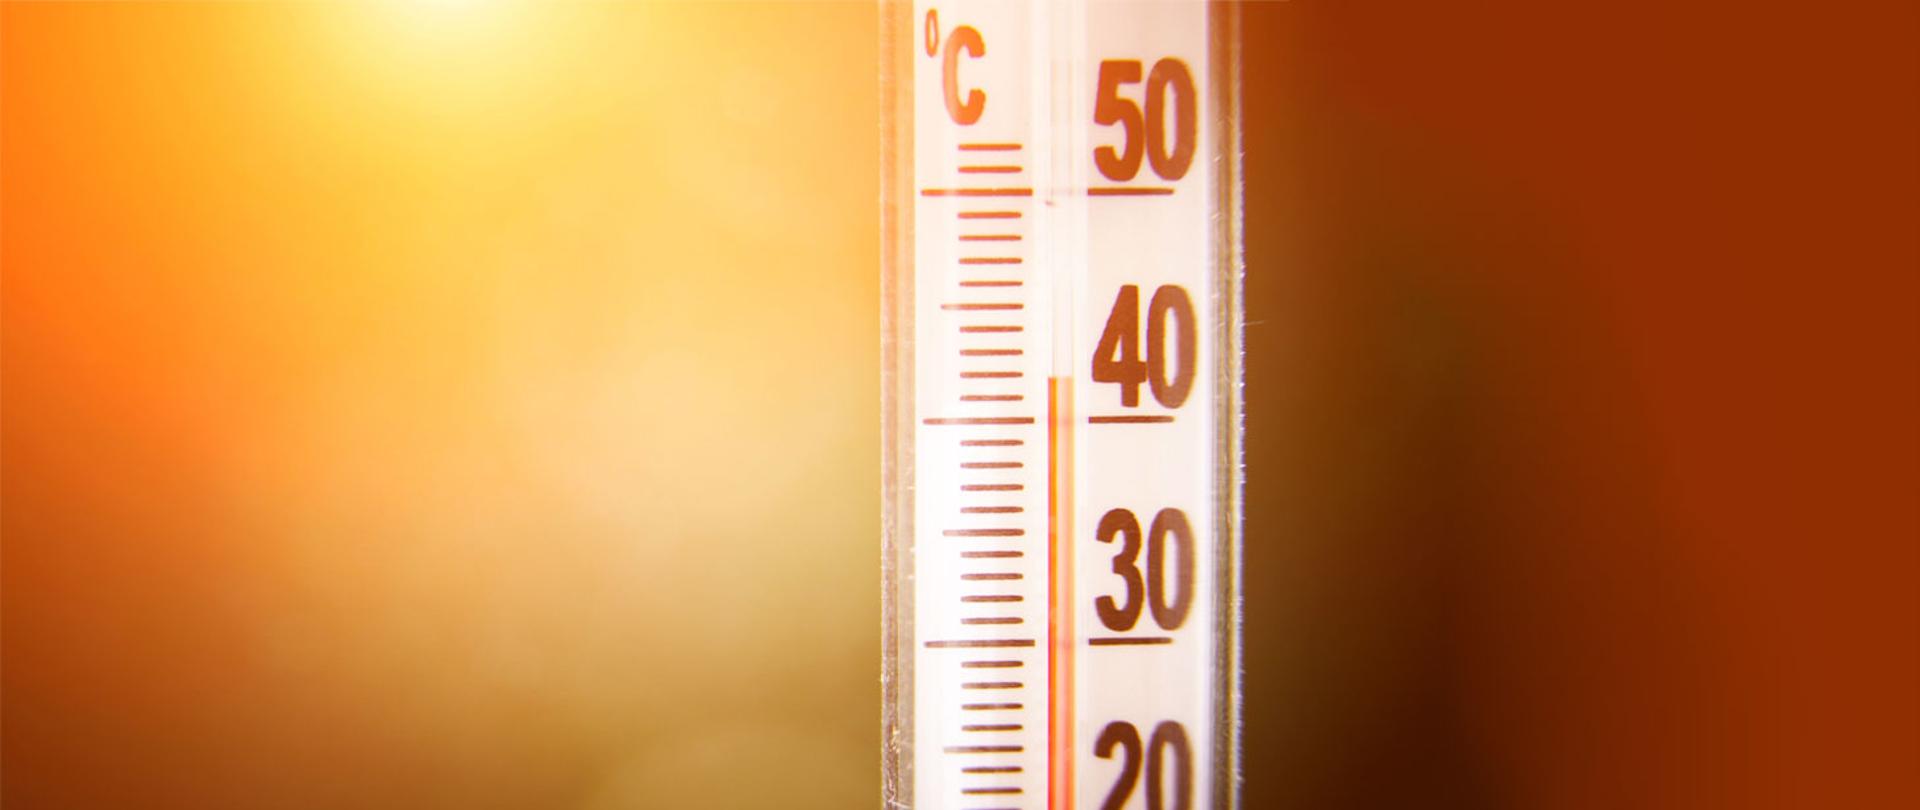 Zdjęcie przedstawiające termometr okienny, wskazujący temperaturę +42 stopni celsjusz.